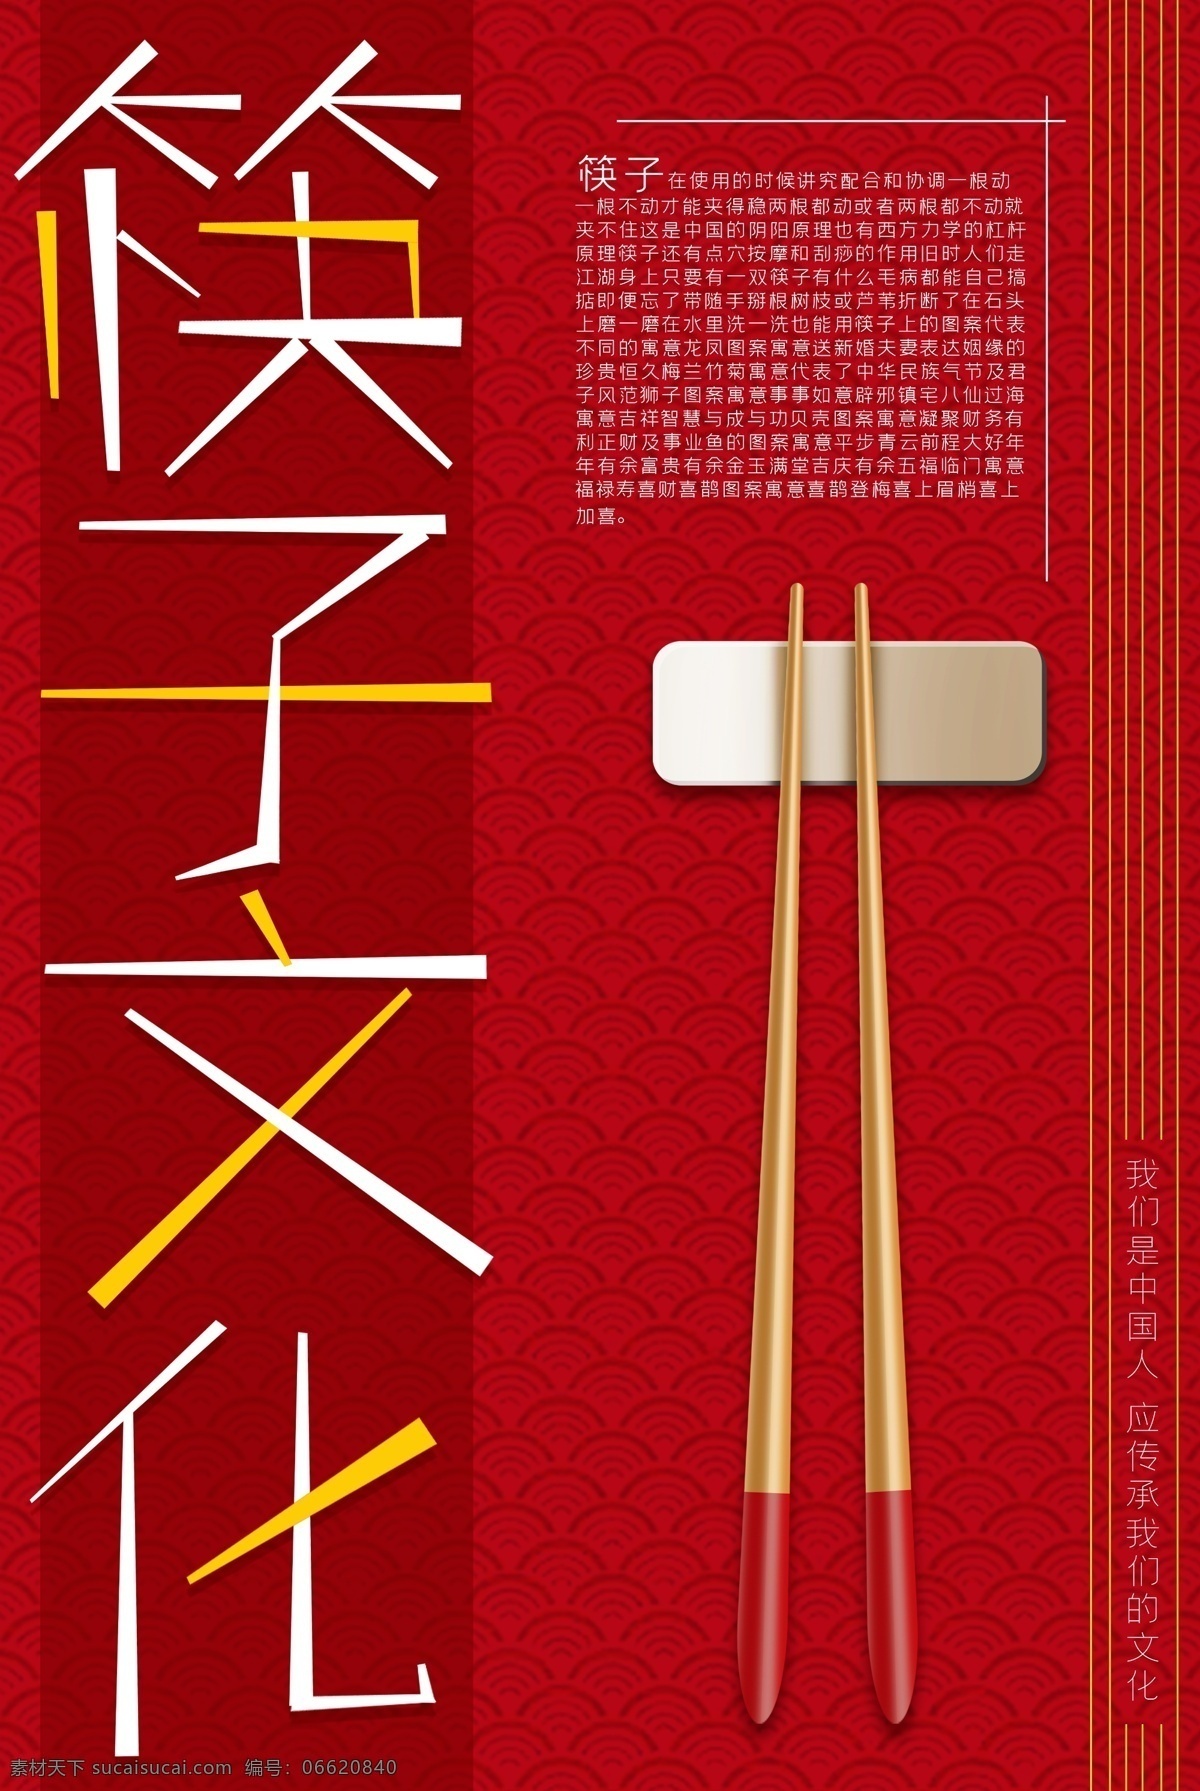 筷子文化图片 食堂文化 宣传 节约 吃饭 筷子 地产物料